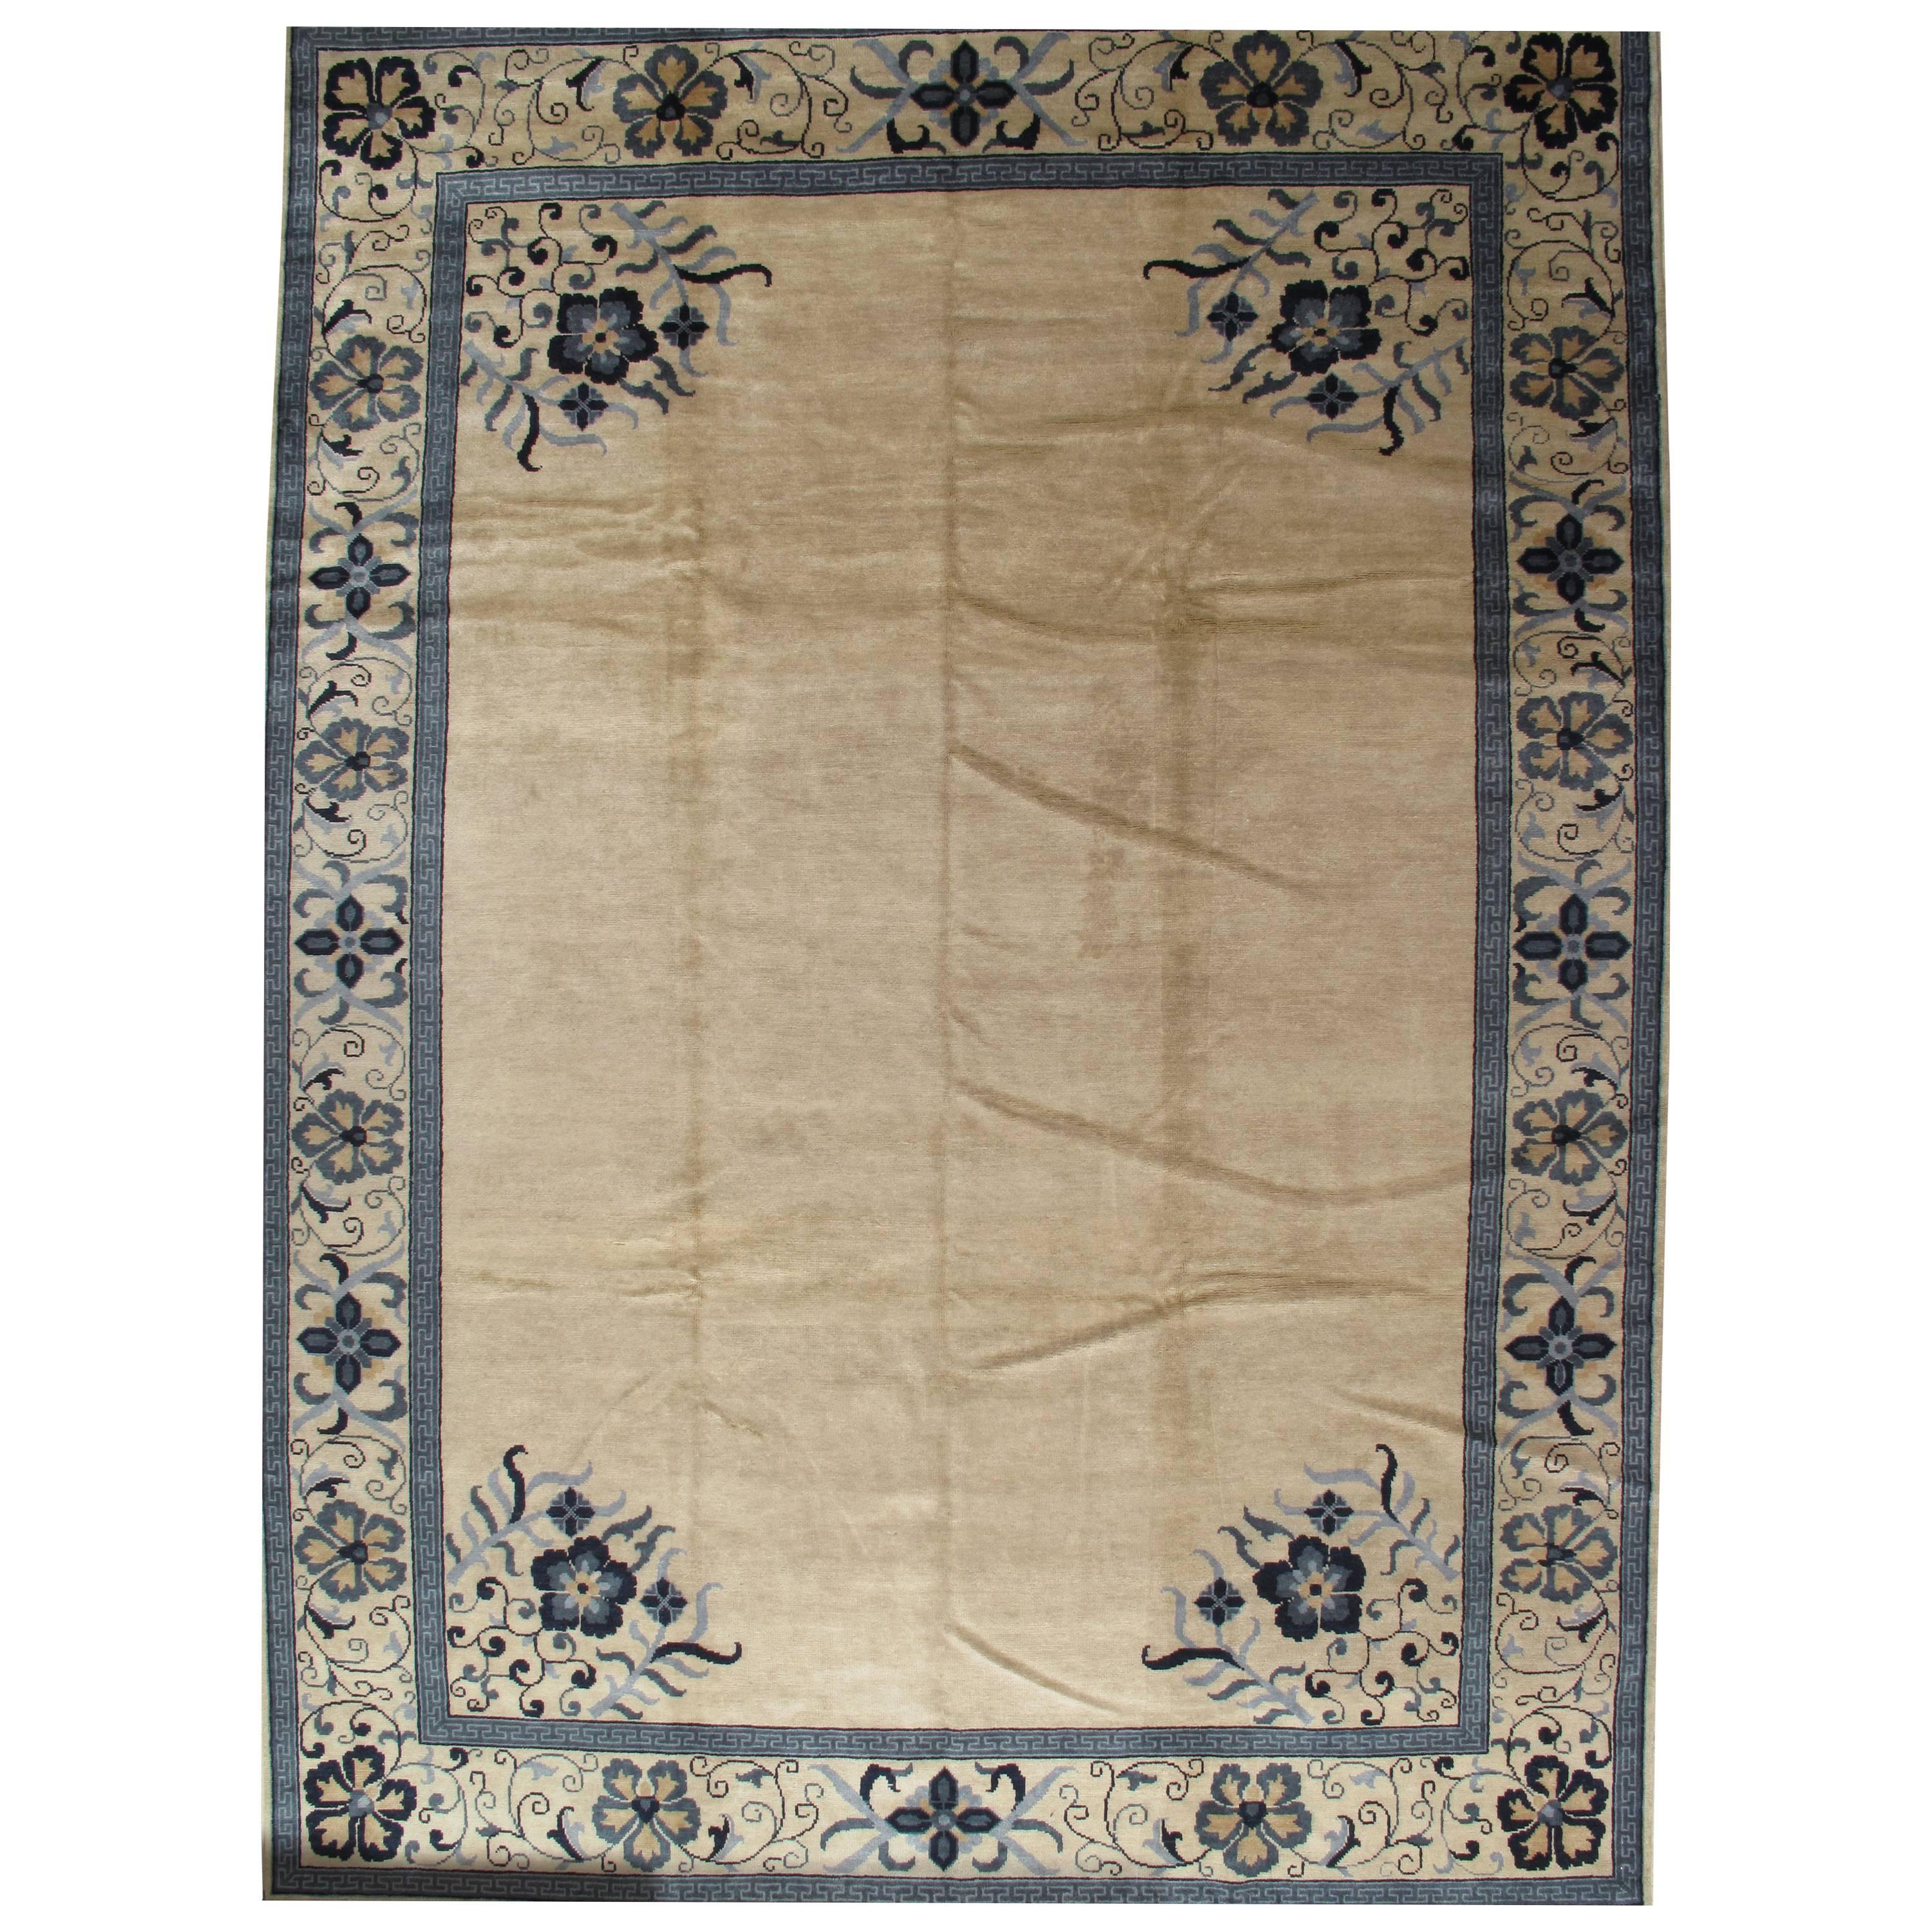 Tapis chinois vintage, tapis brun clair et bleu, tapis en laine fait à la main